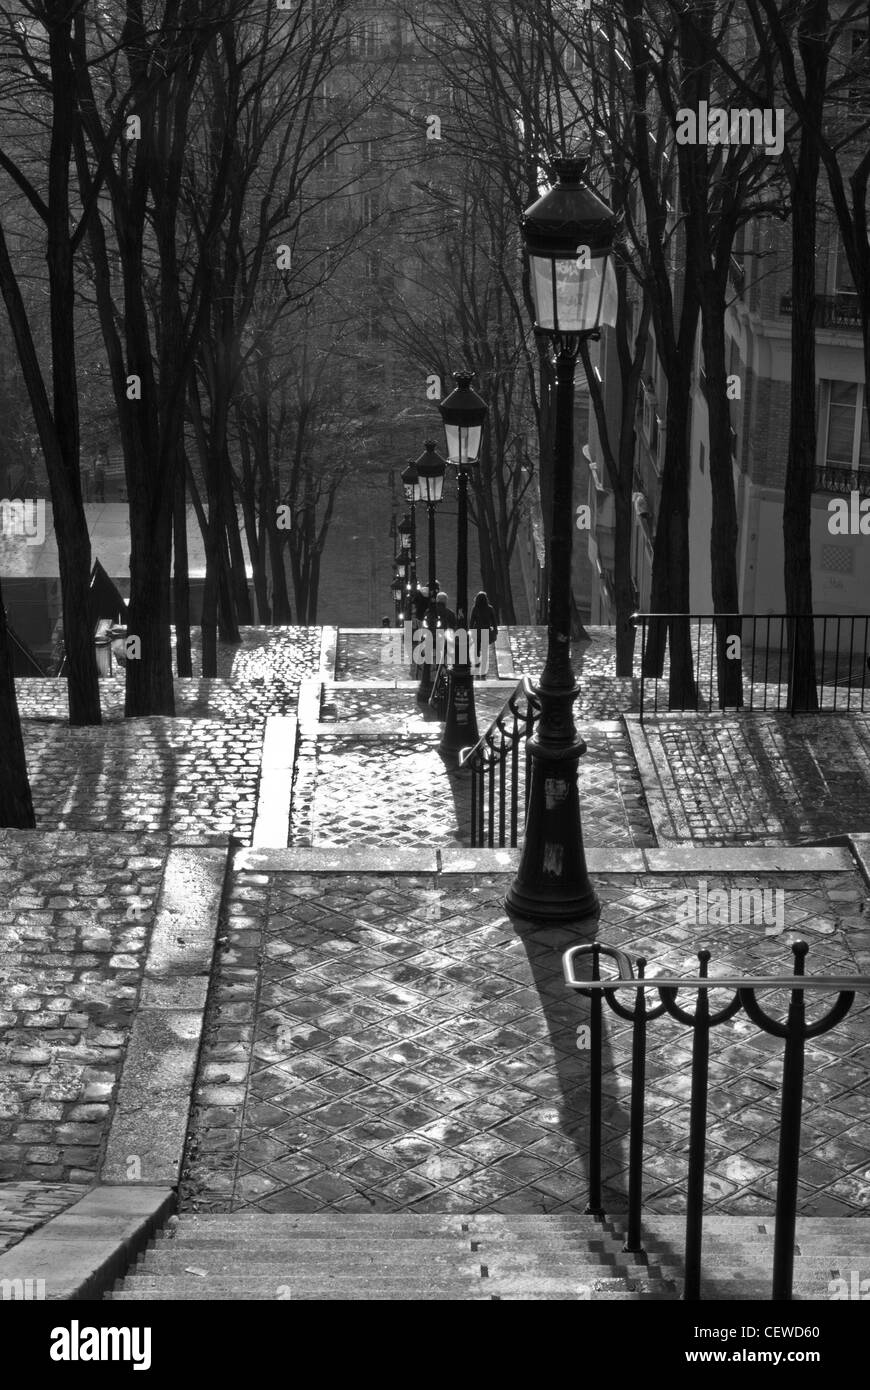 Parigi, Montmartre. In bianco e nero a pressione atmosferica, guardando in giù in acciottolato percorso a gradini,old street lights/ balaustra. Foto Stock